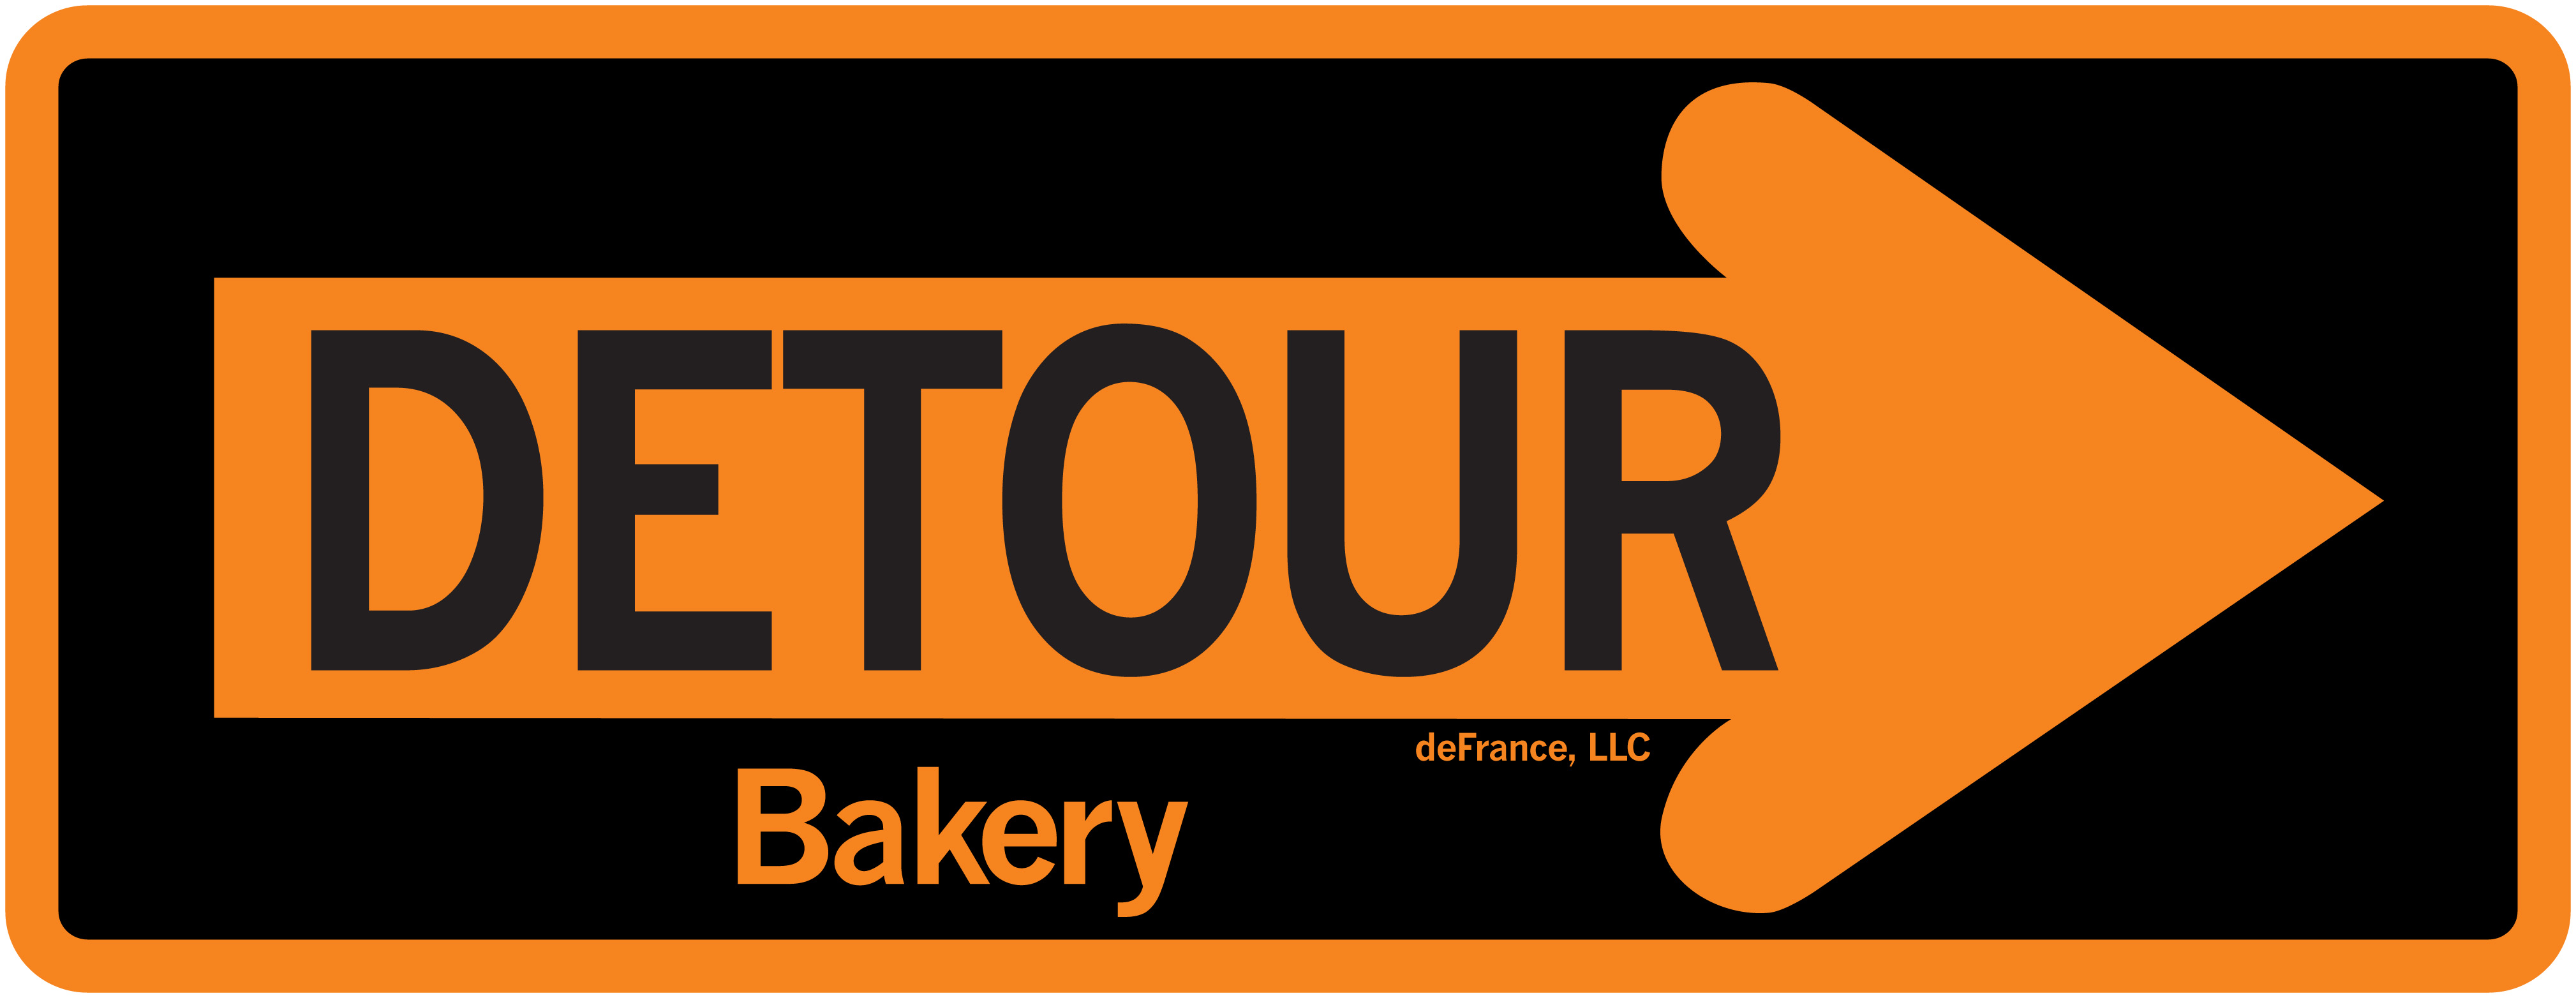 Detour Bakery